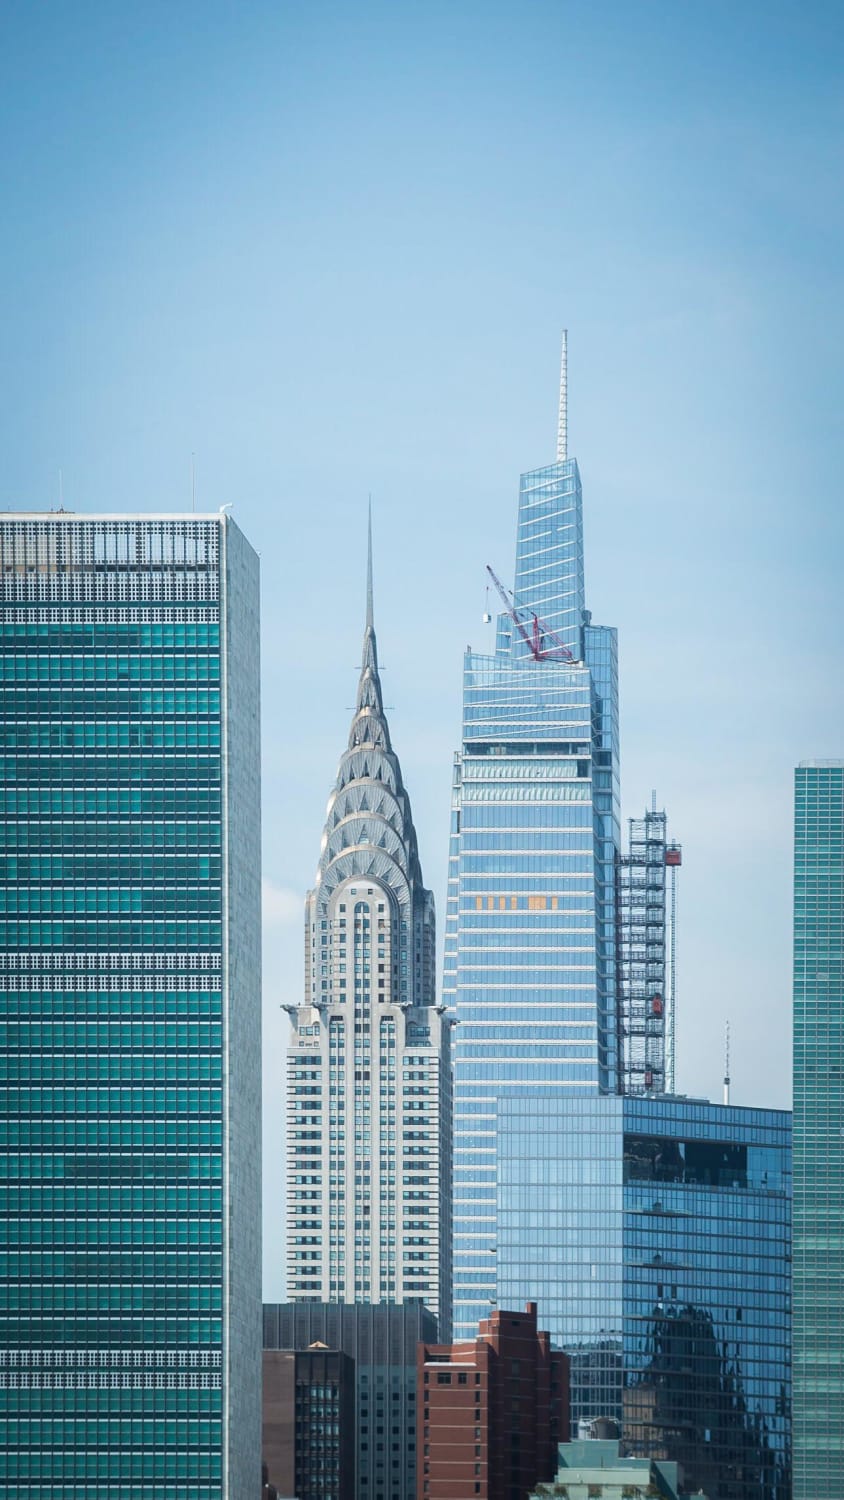 United Nations Secretariat Building, Chrysler Building, One Vanderbilt, photographed from East River